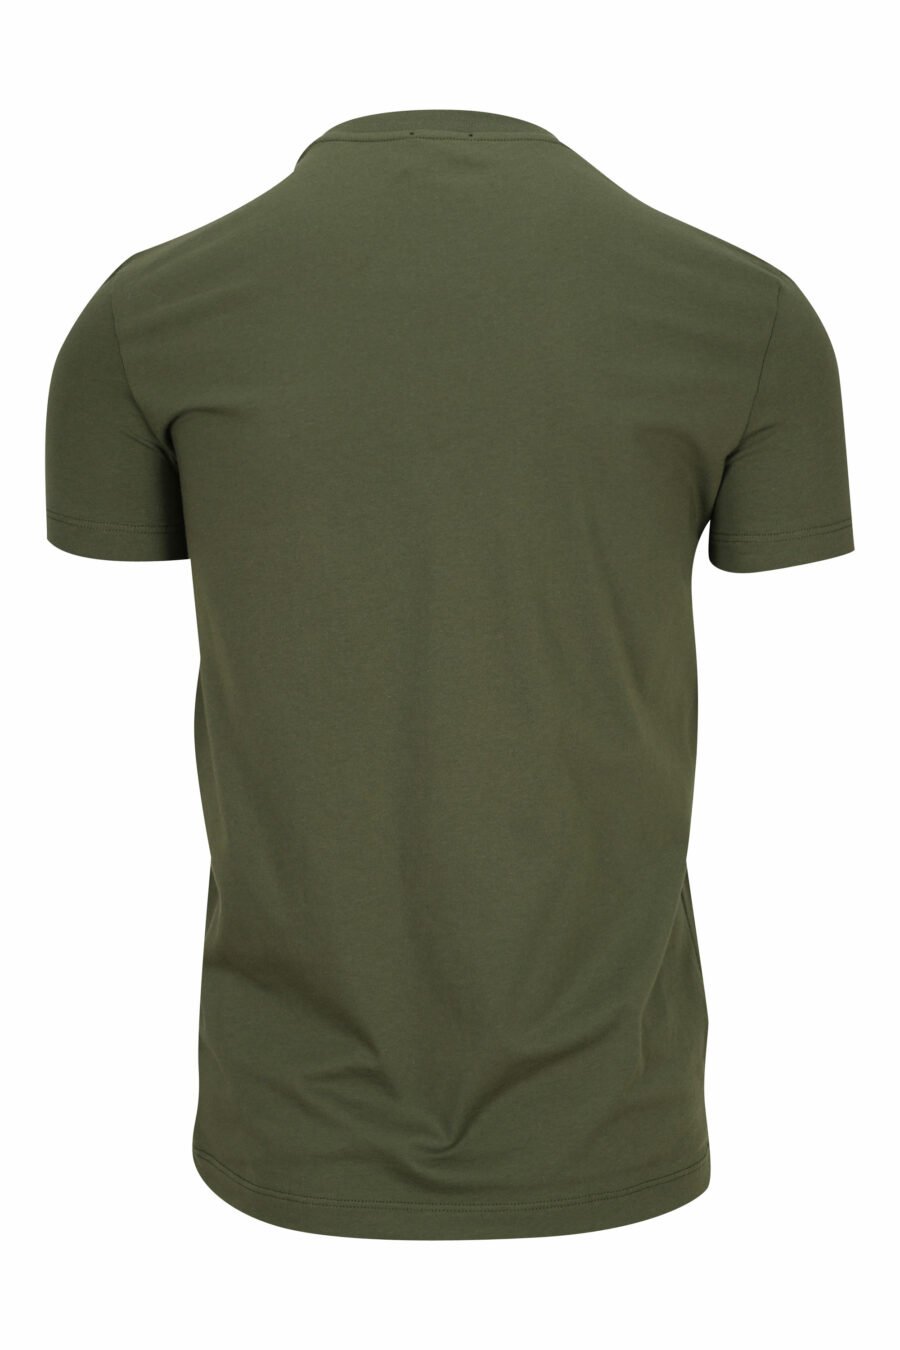 Militärgrünes T-Shirt mit weißer Unterwäsche minilogue - 8032674811622 1